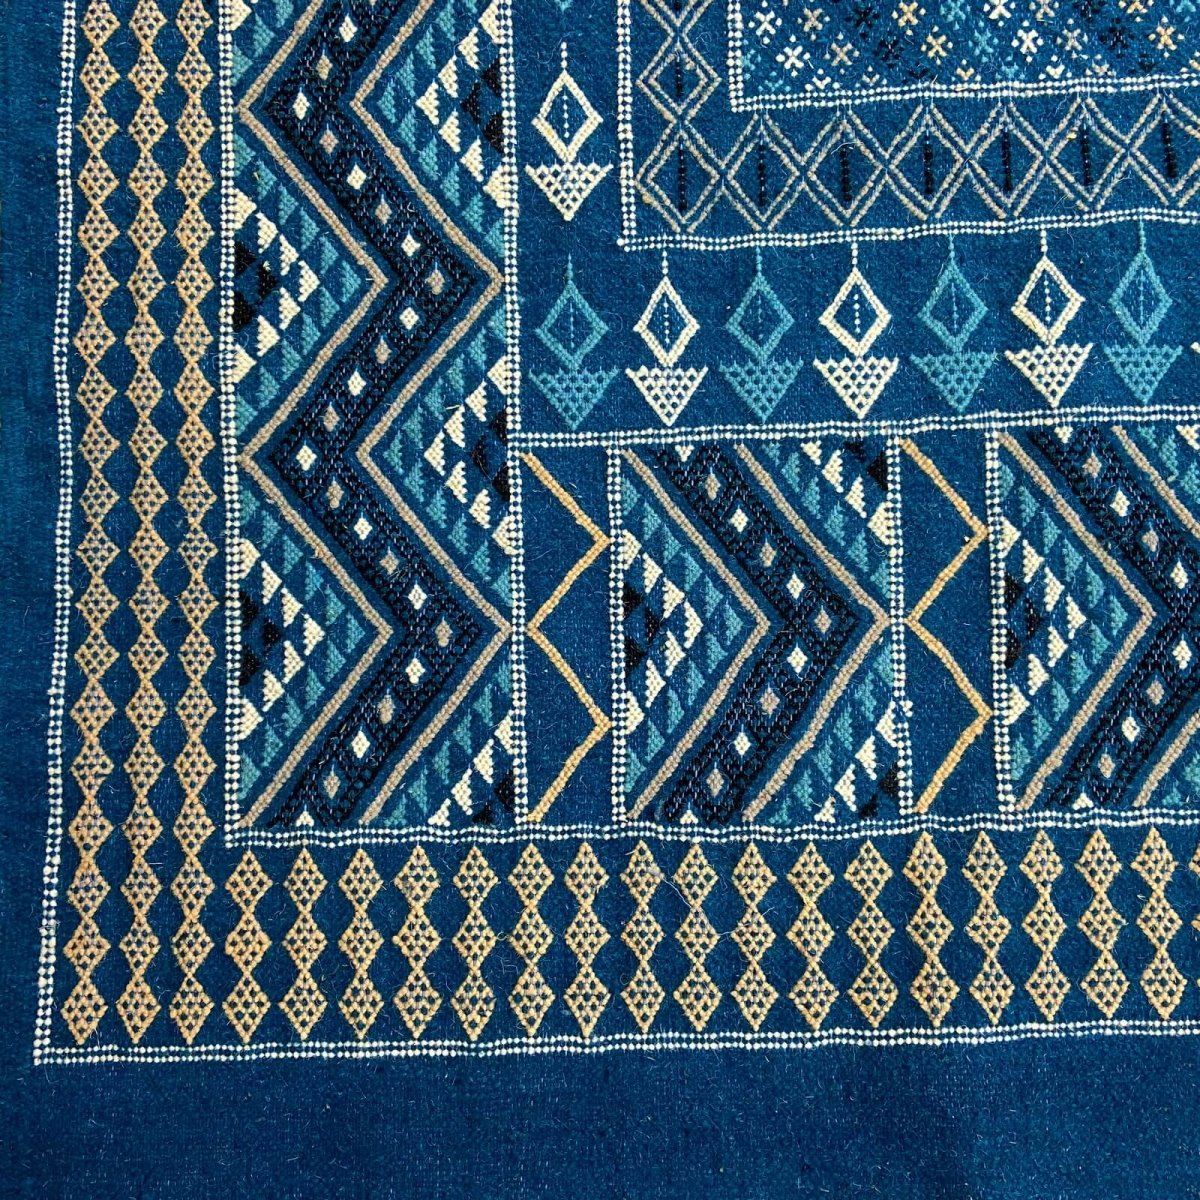 Tapete berbere Tapete Margoum Syphax 200x300 cm Azul/Branco (Artesanal, Lã, Tunísia) Tapete Margoum tunisino da cidade de Kairou